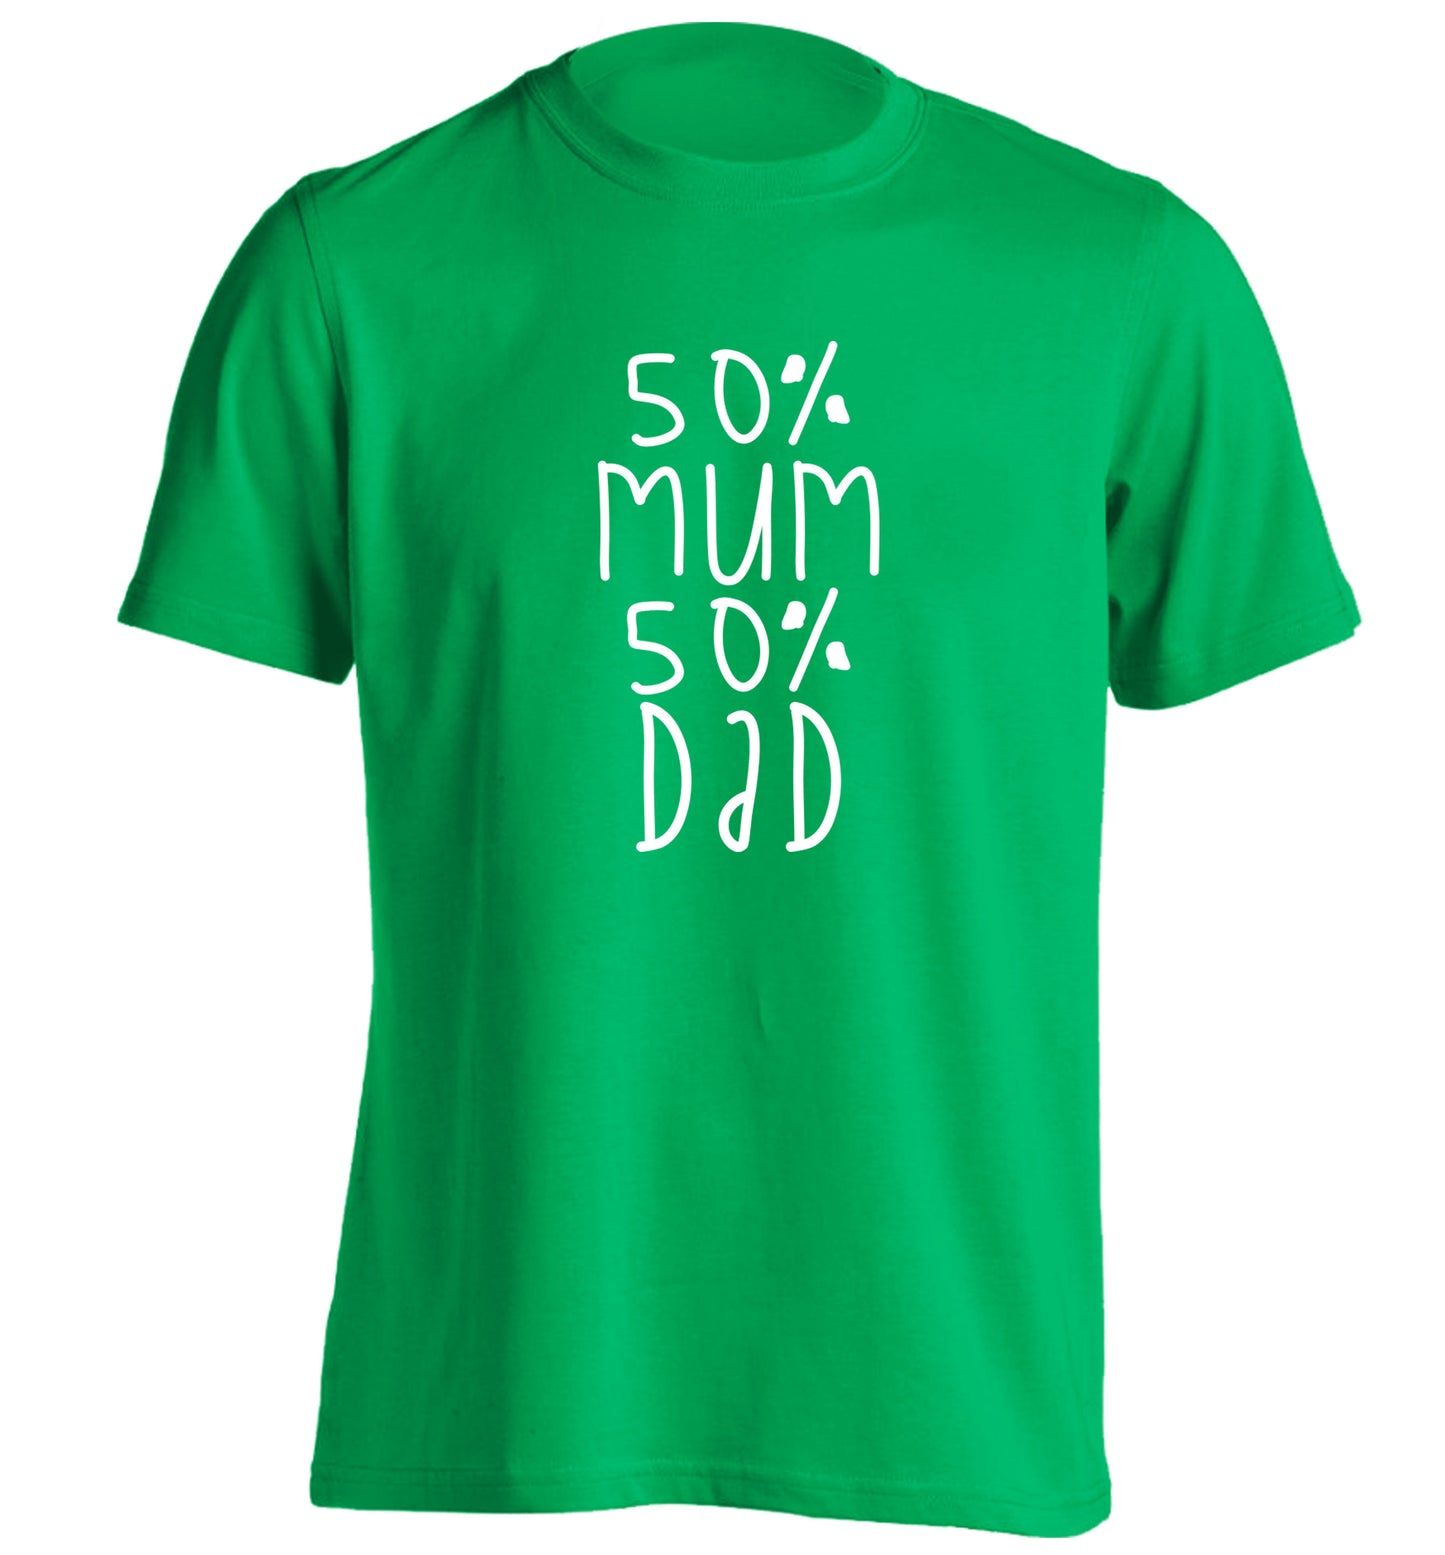 50% mum 50% dad adults unisex green Tshirt 2XL